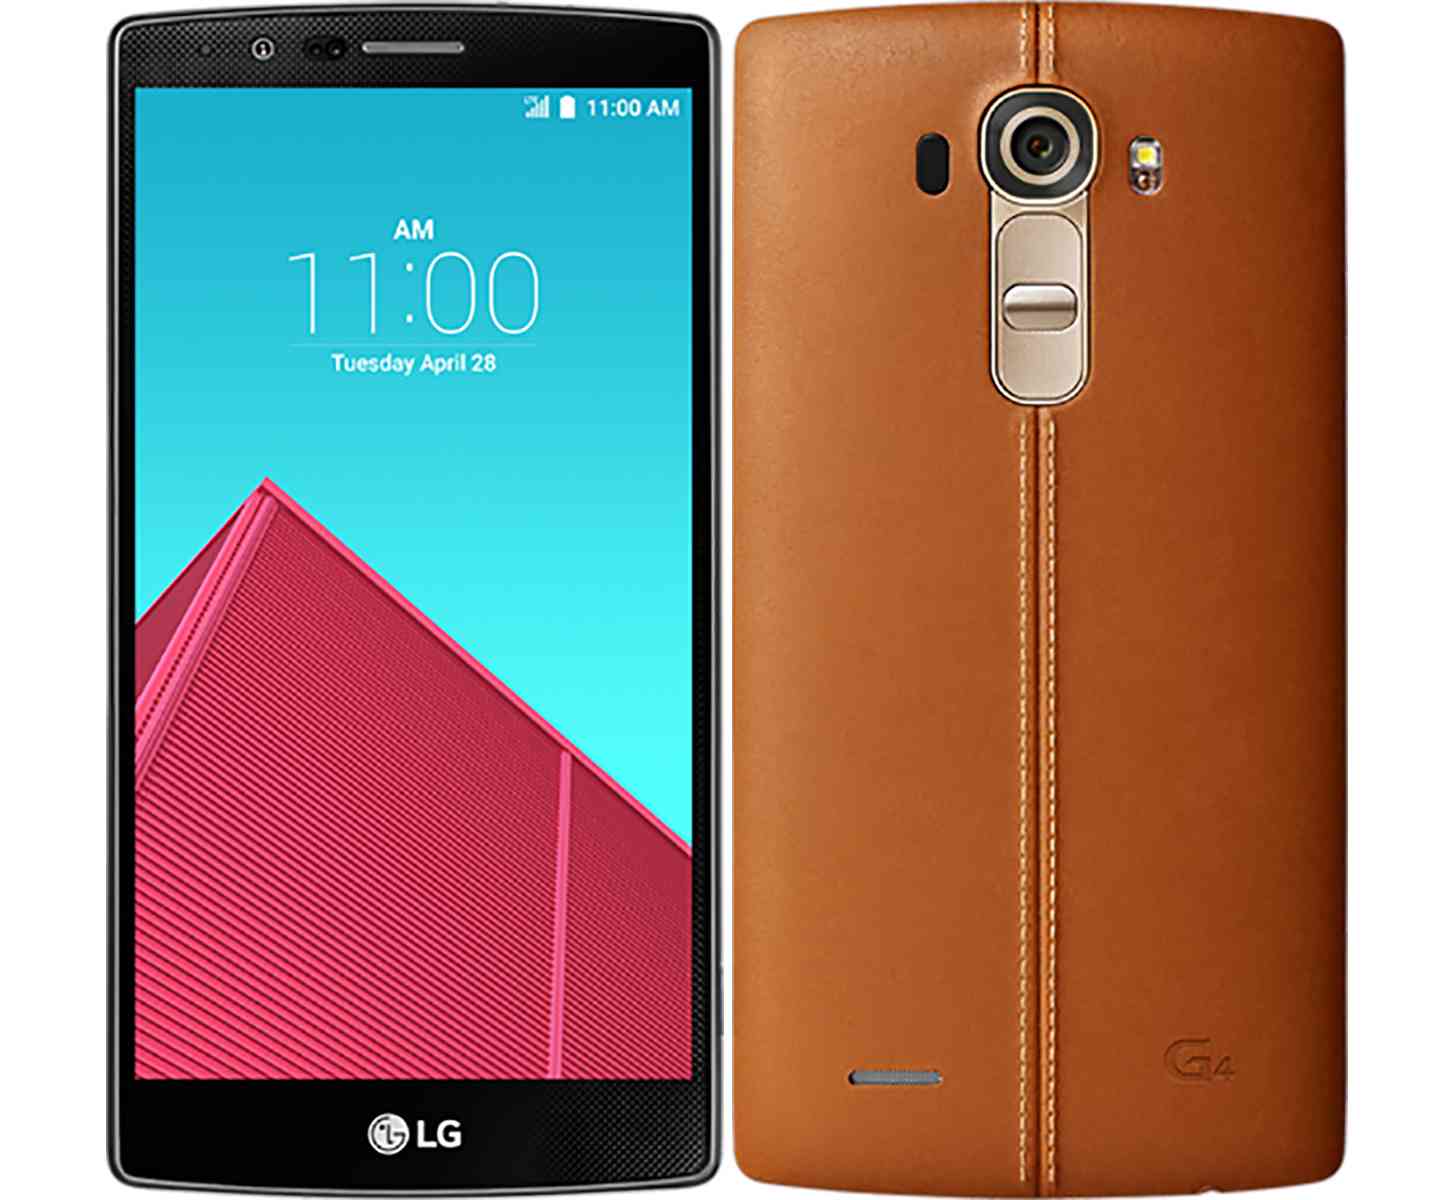 LG G4 leather back official leak